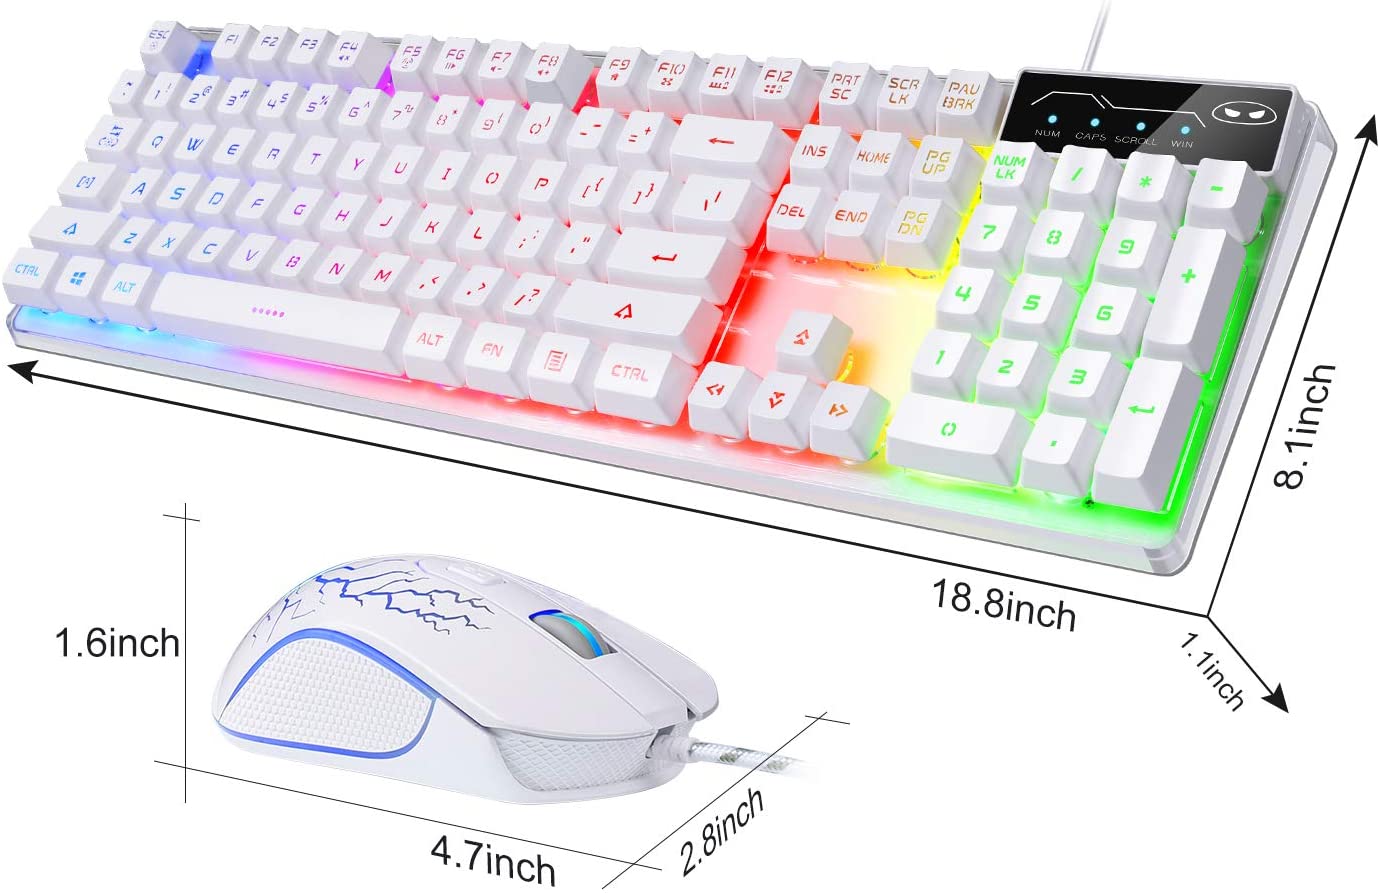 K1 LED Rainbow Backlit Keyboard